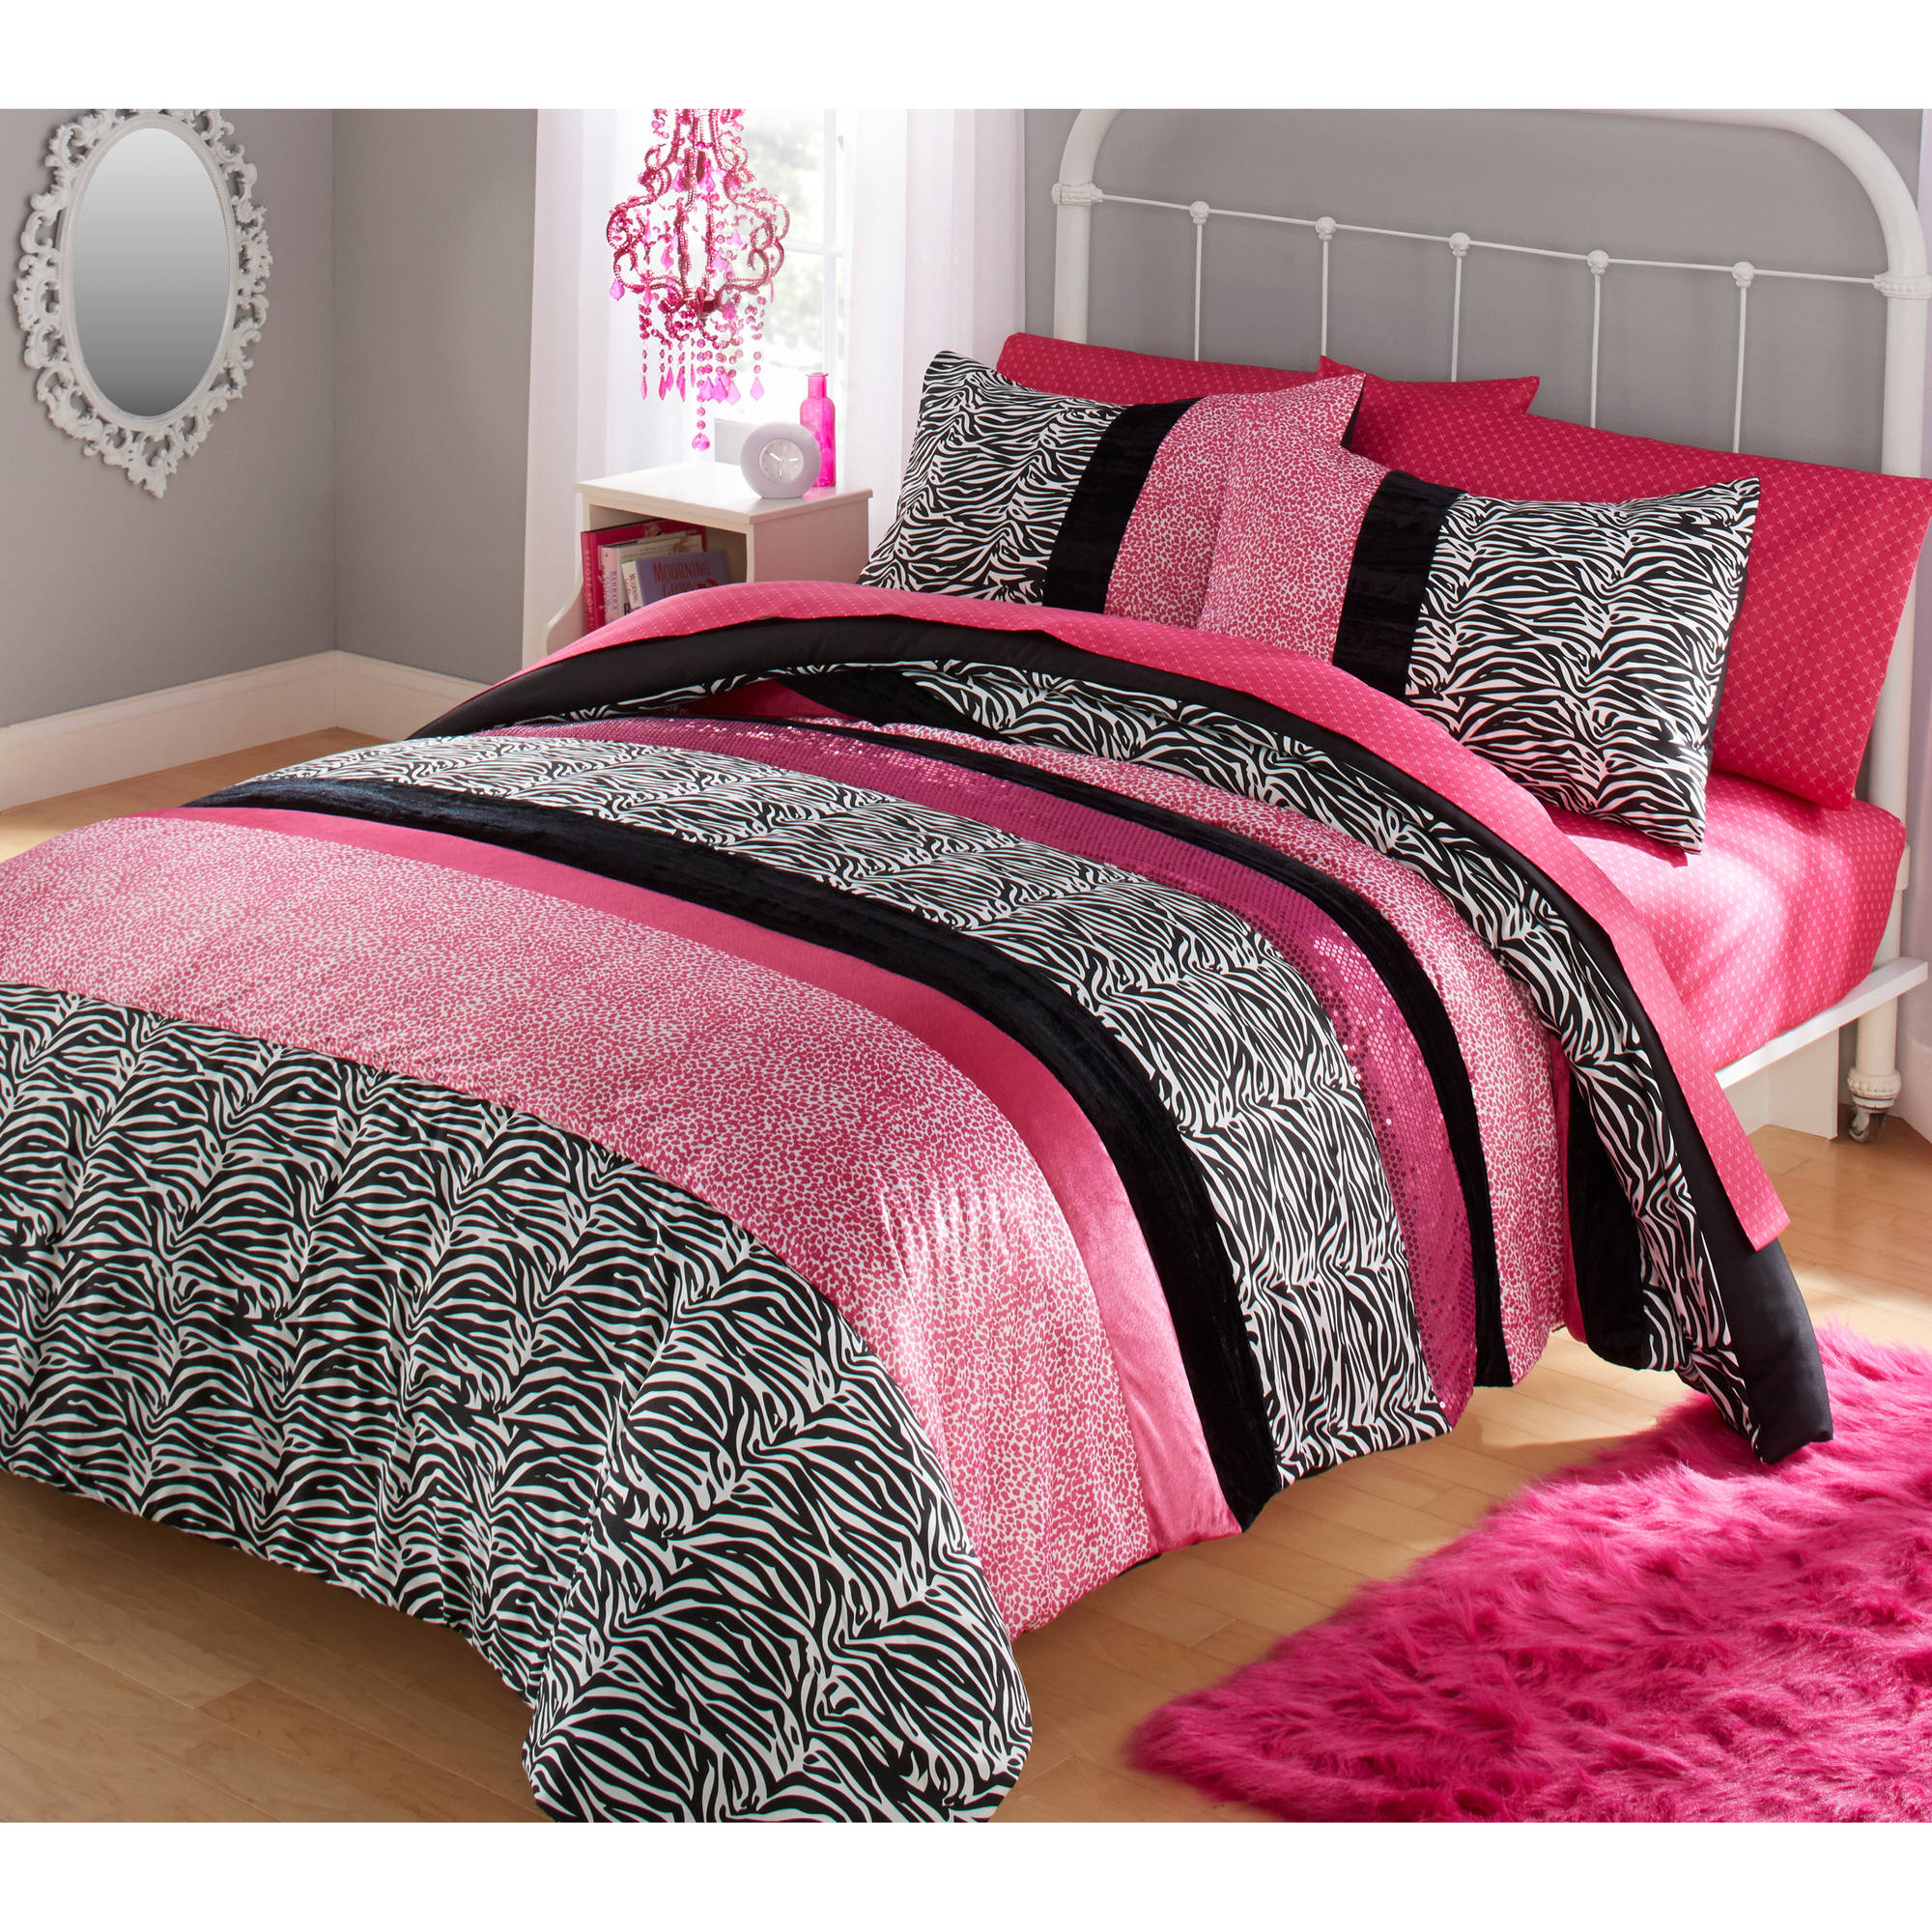 Your Zone Zebra Bedding Comforter Set Walmart.com